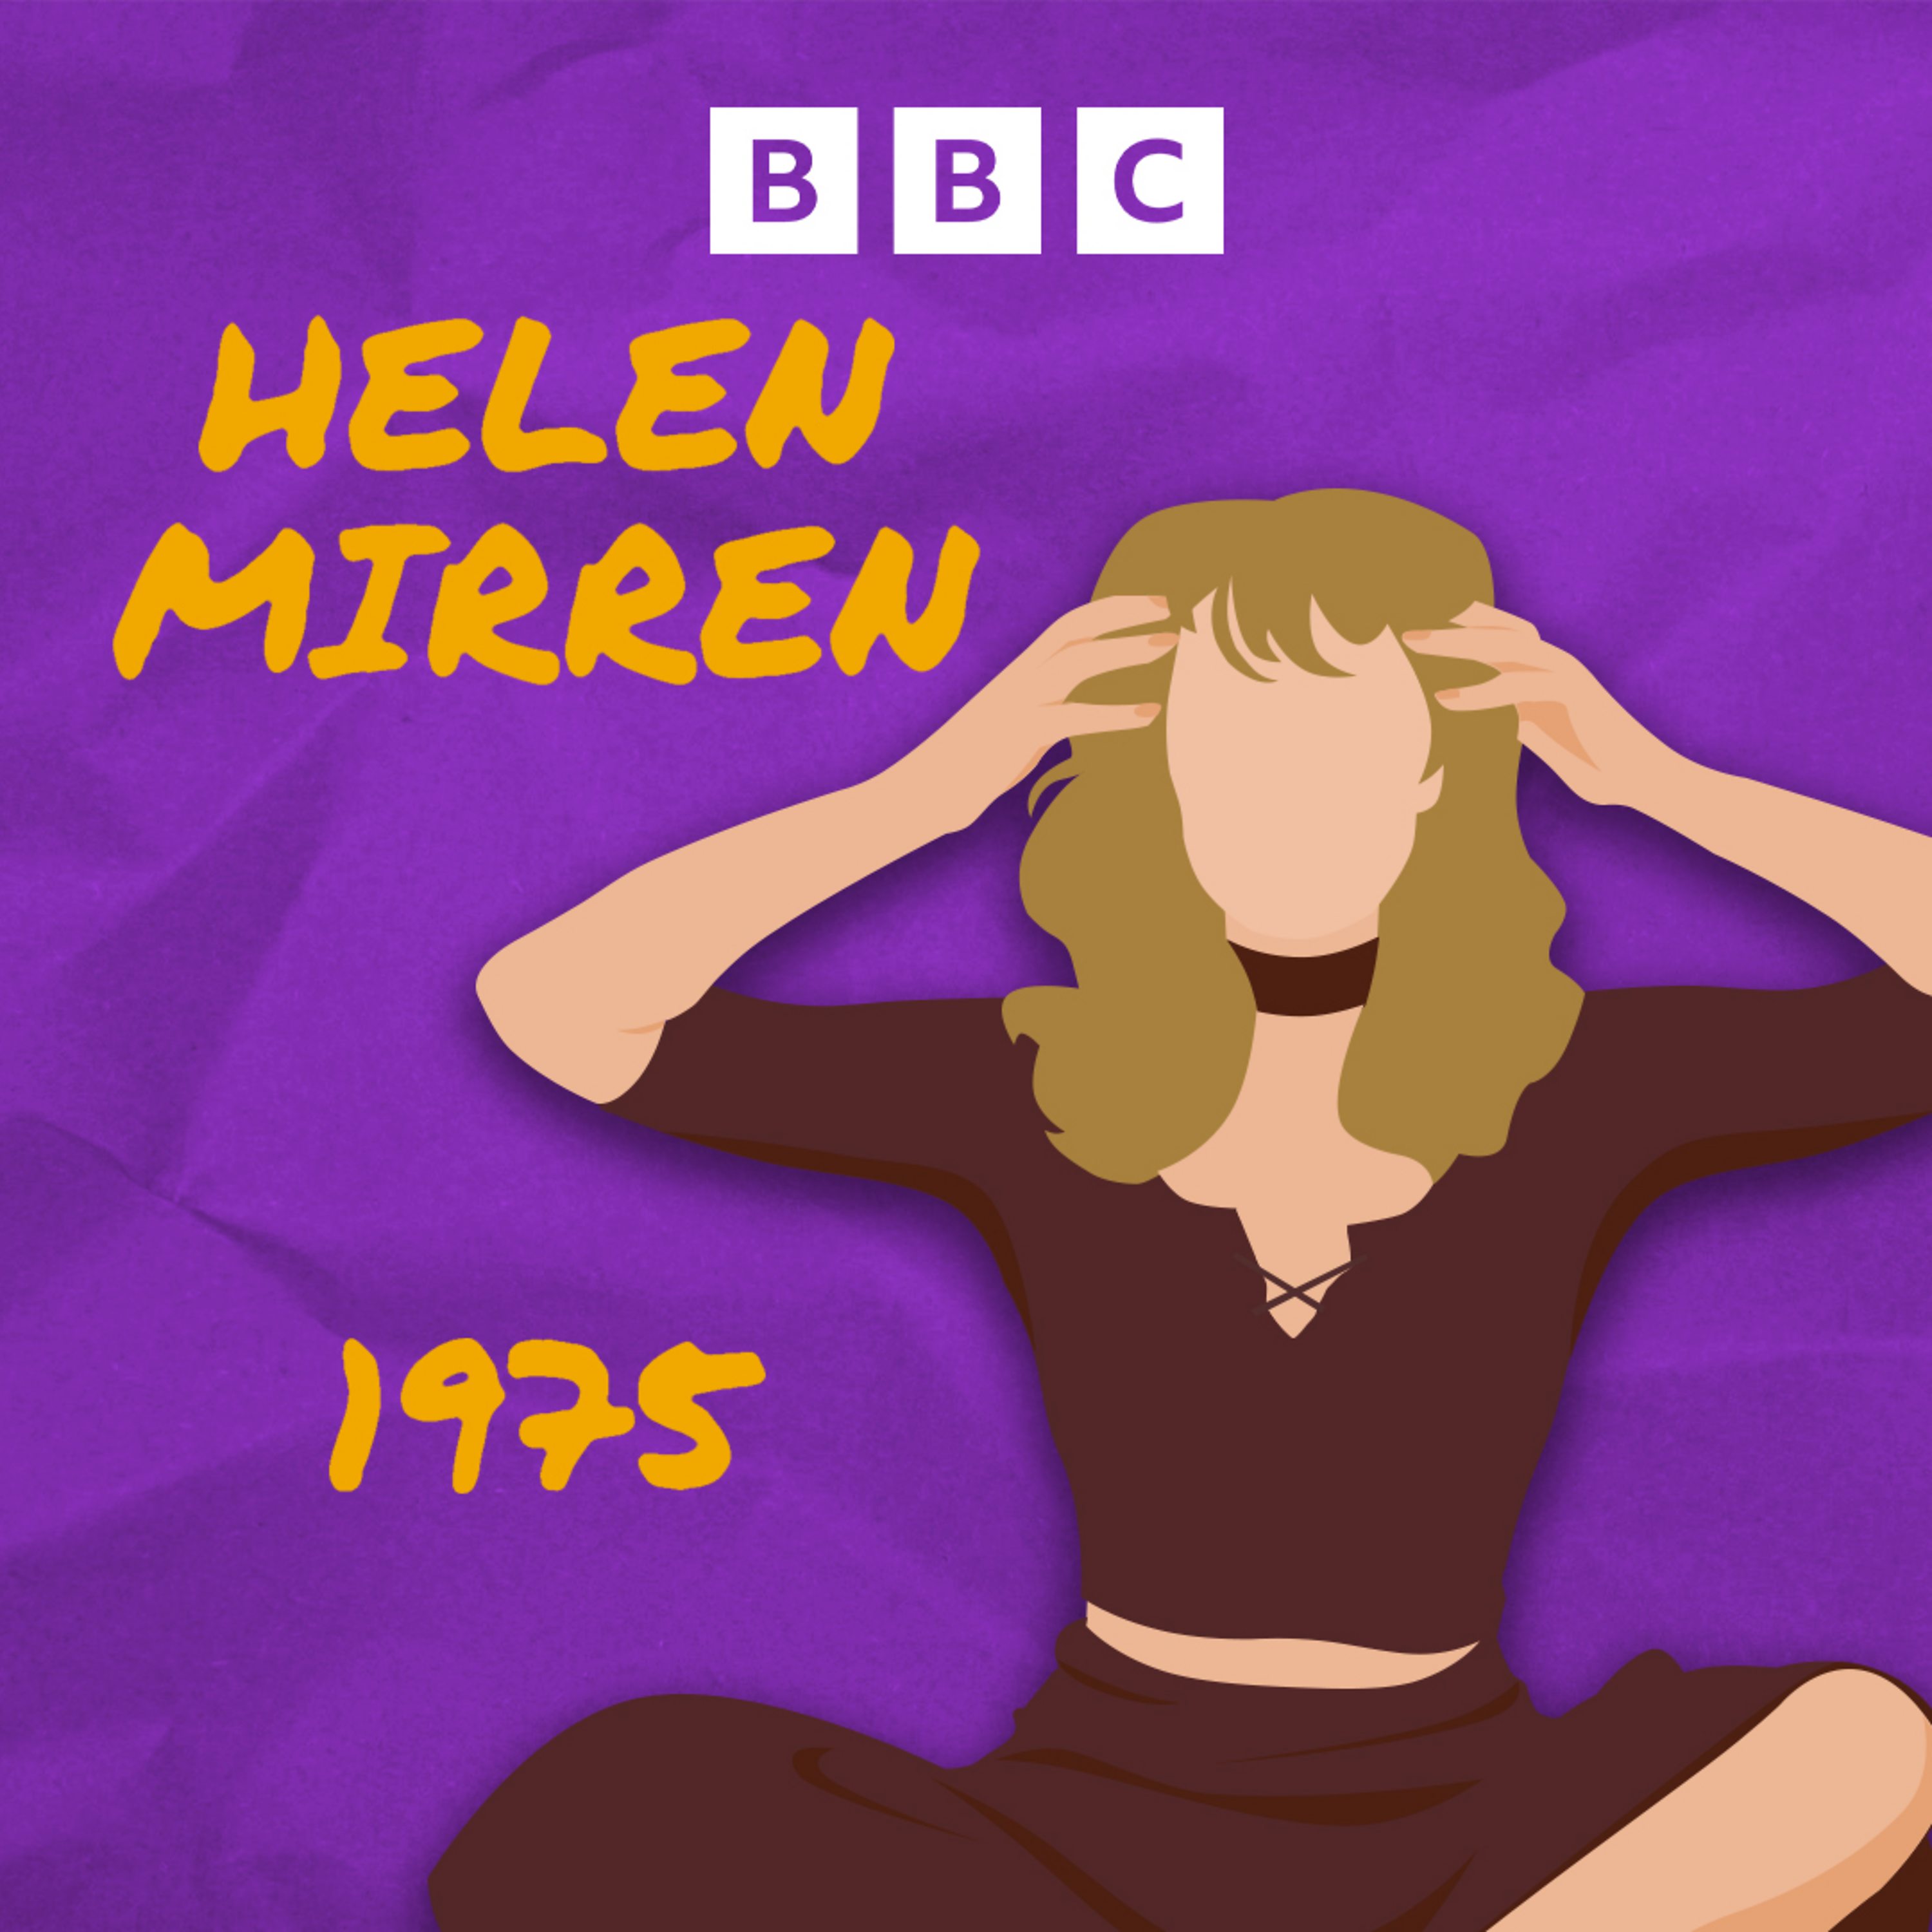 Helen Mirren 1975